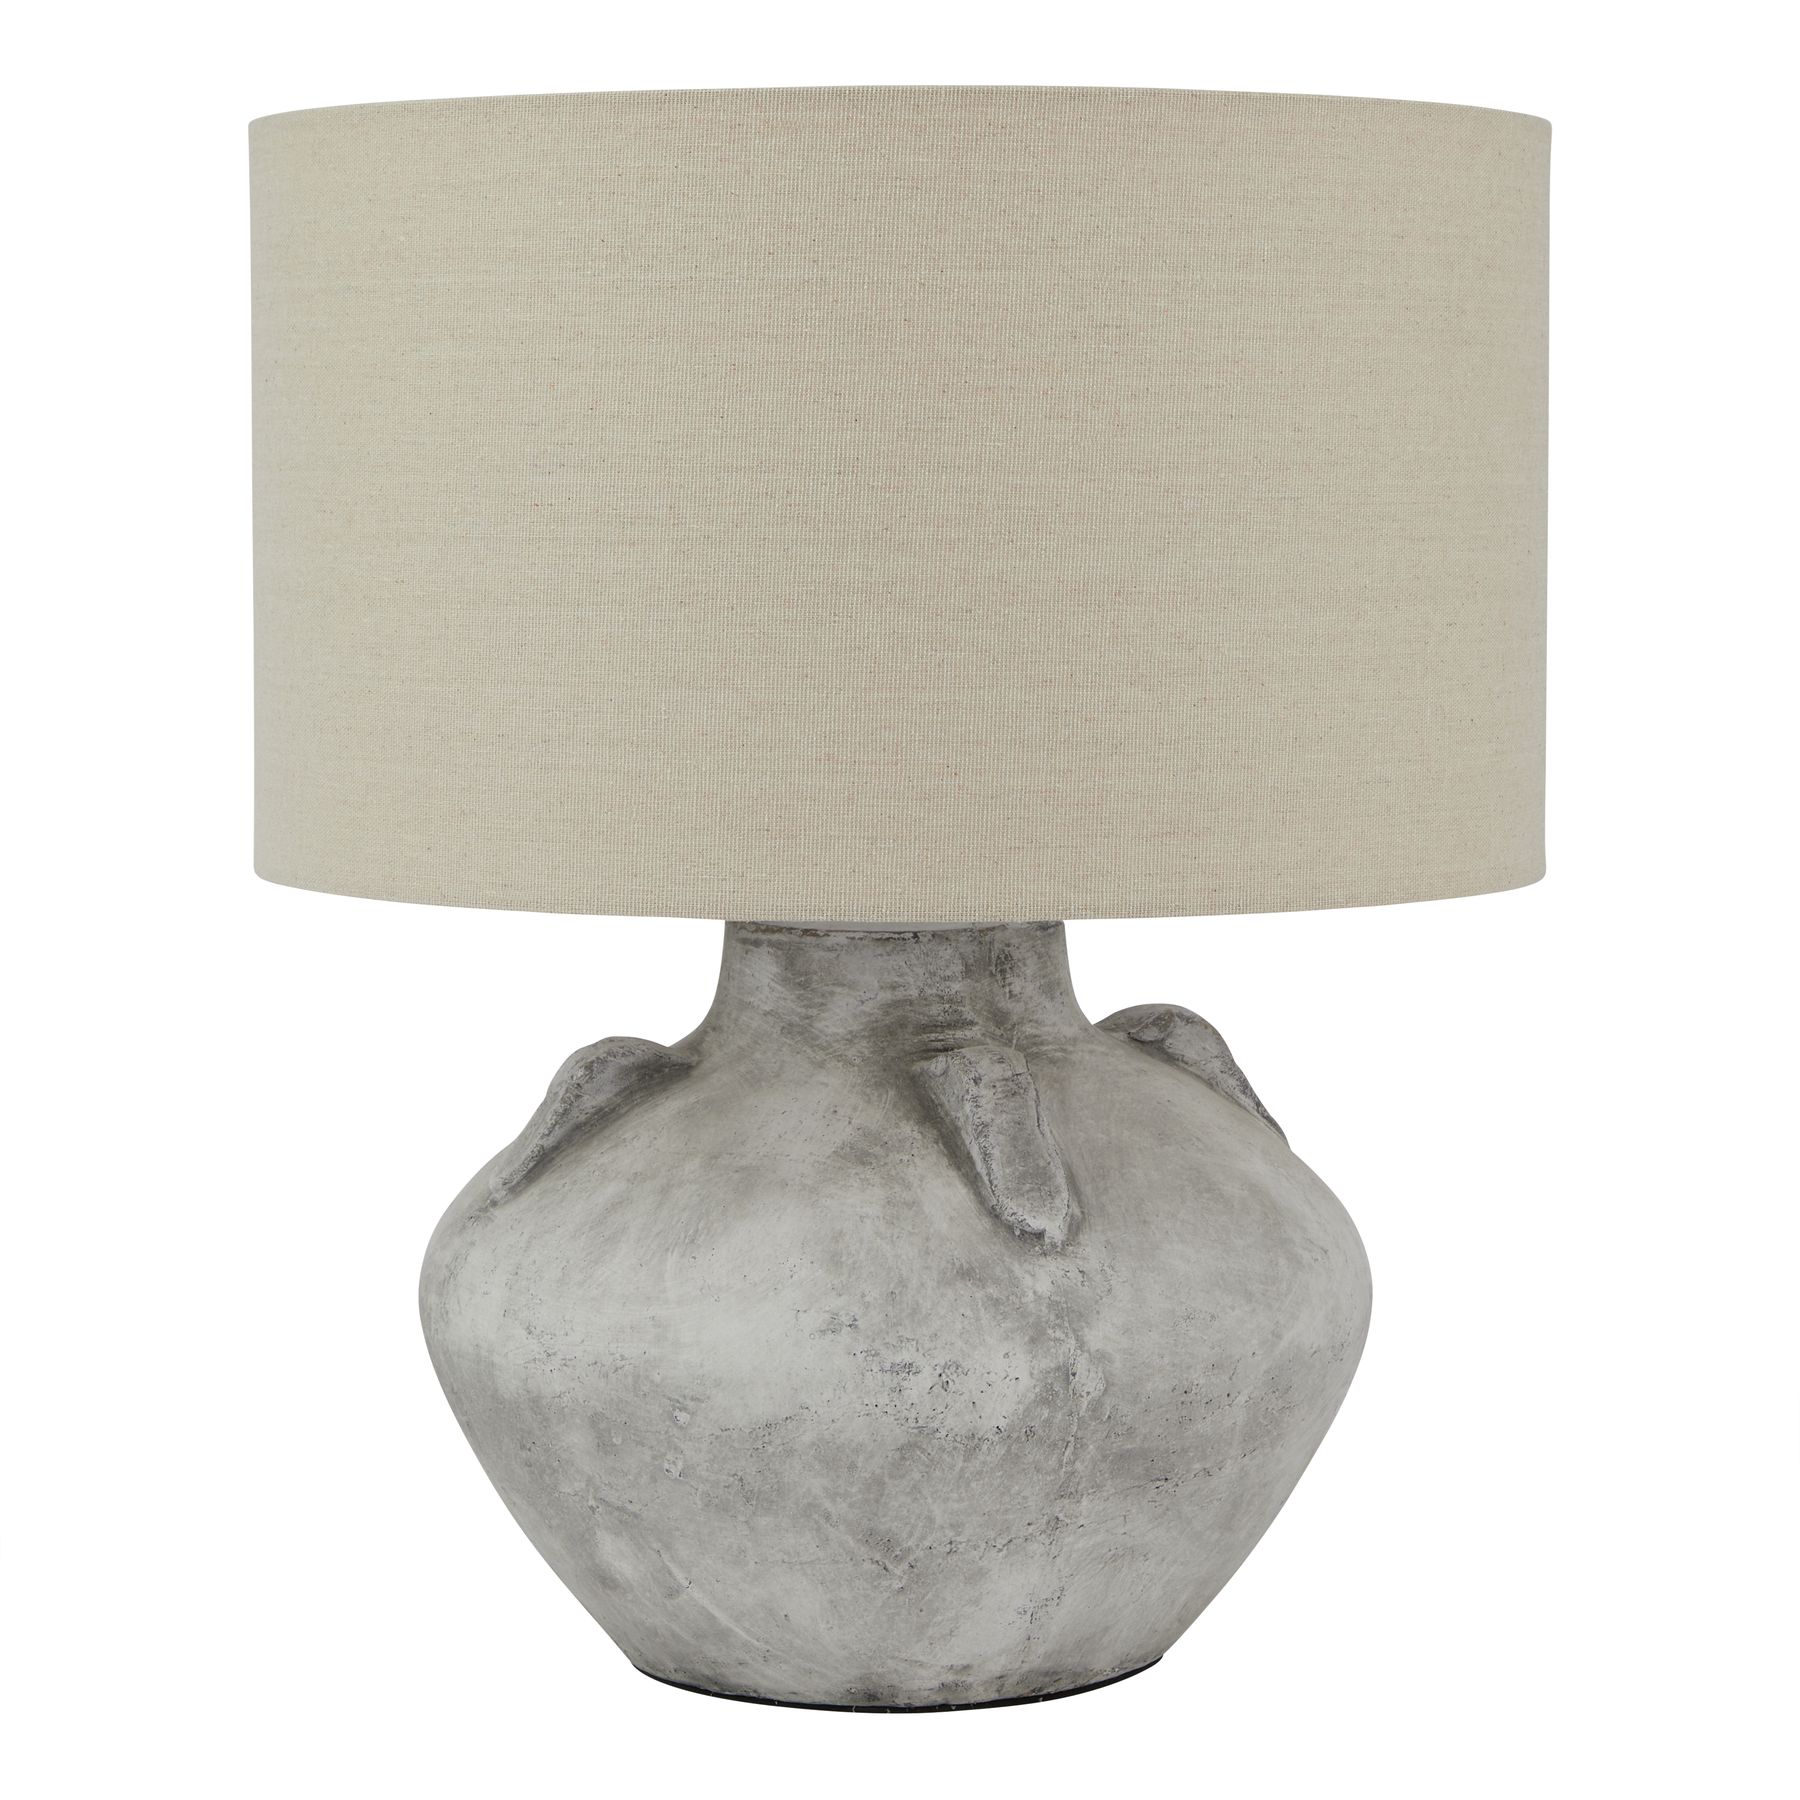 Athena Stone Lekanis Lamp - Image 1